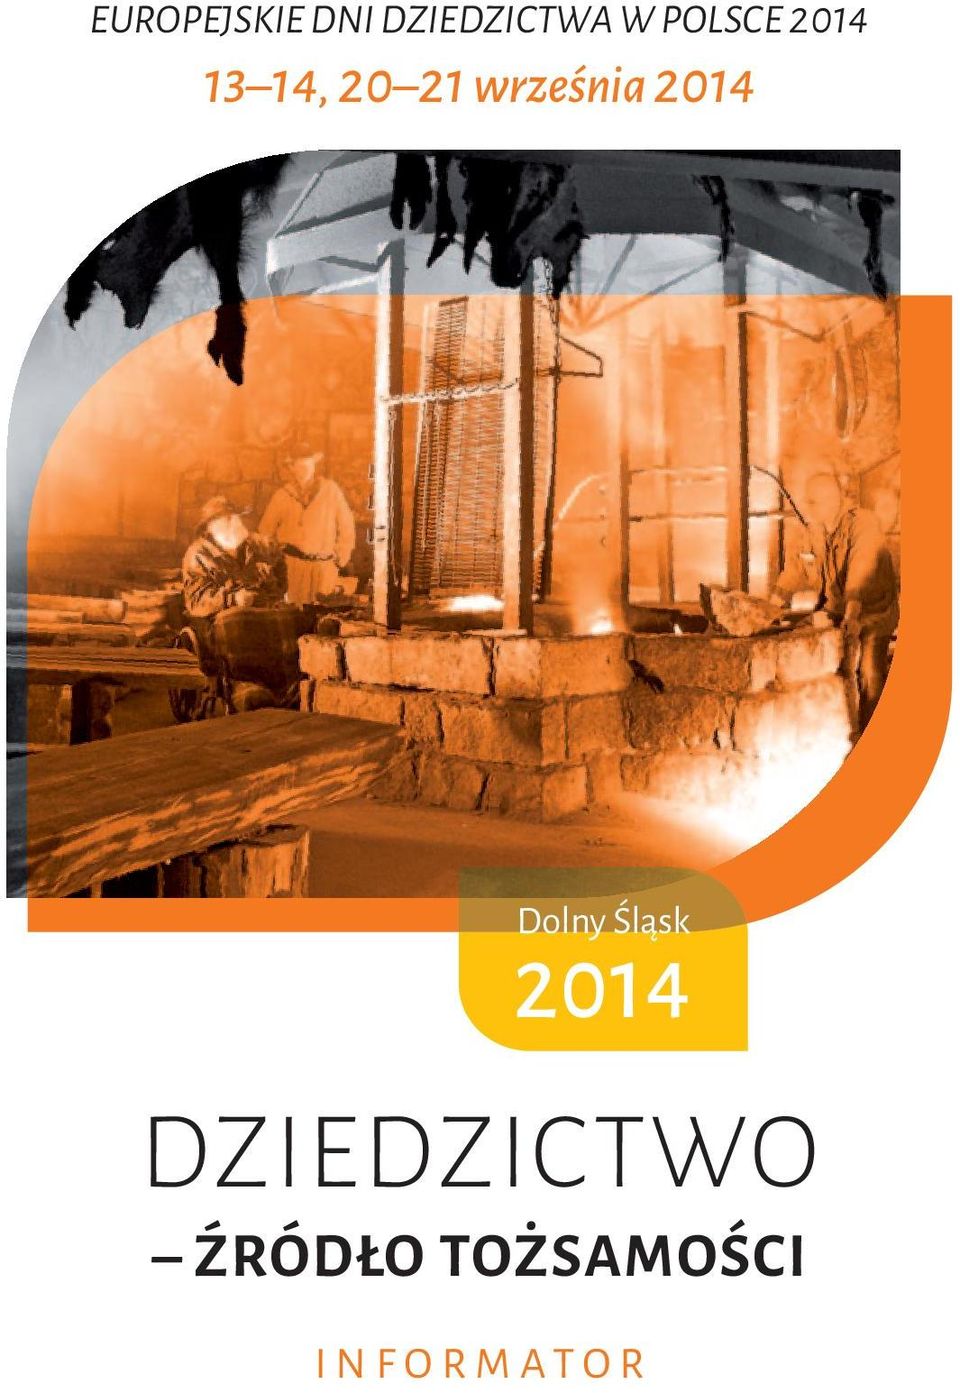 2014 Dolny Śląsk 2014 DzieDzictwo